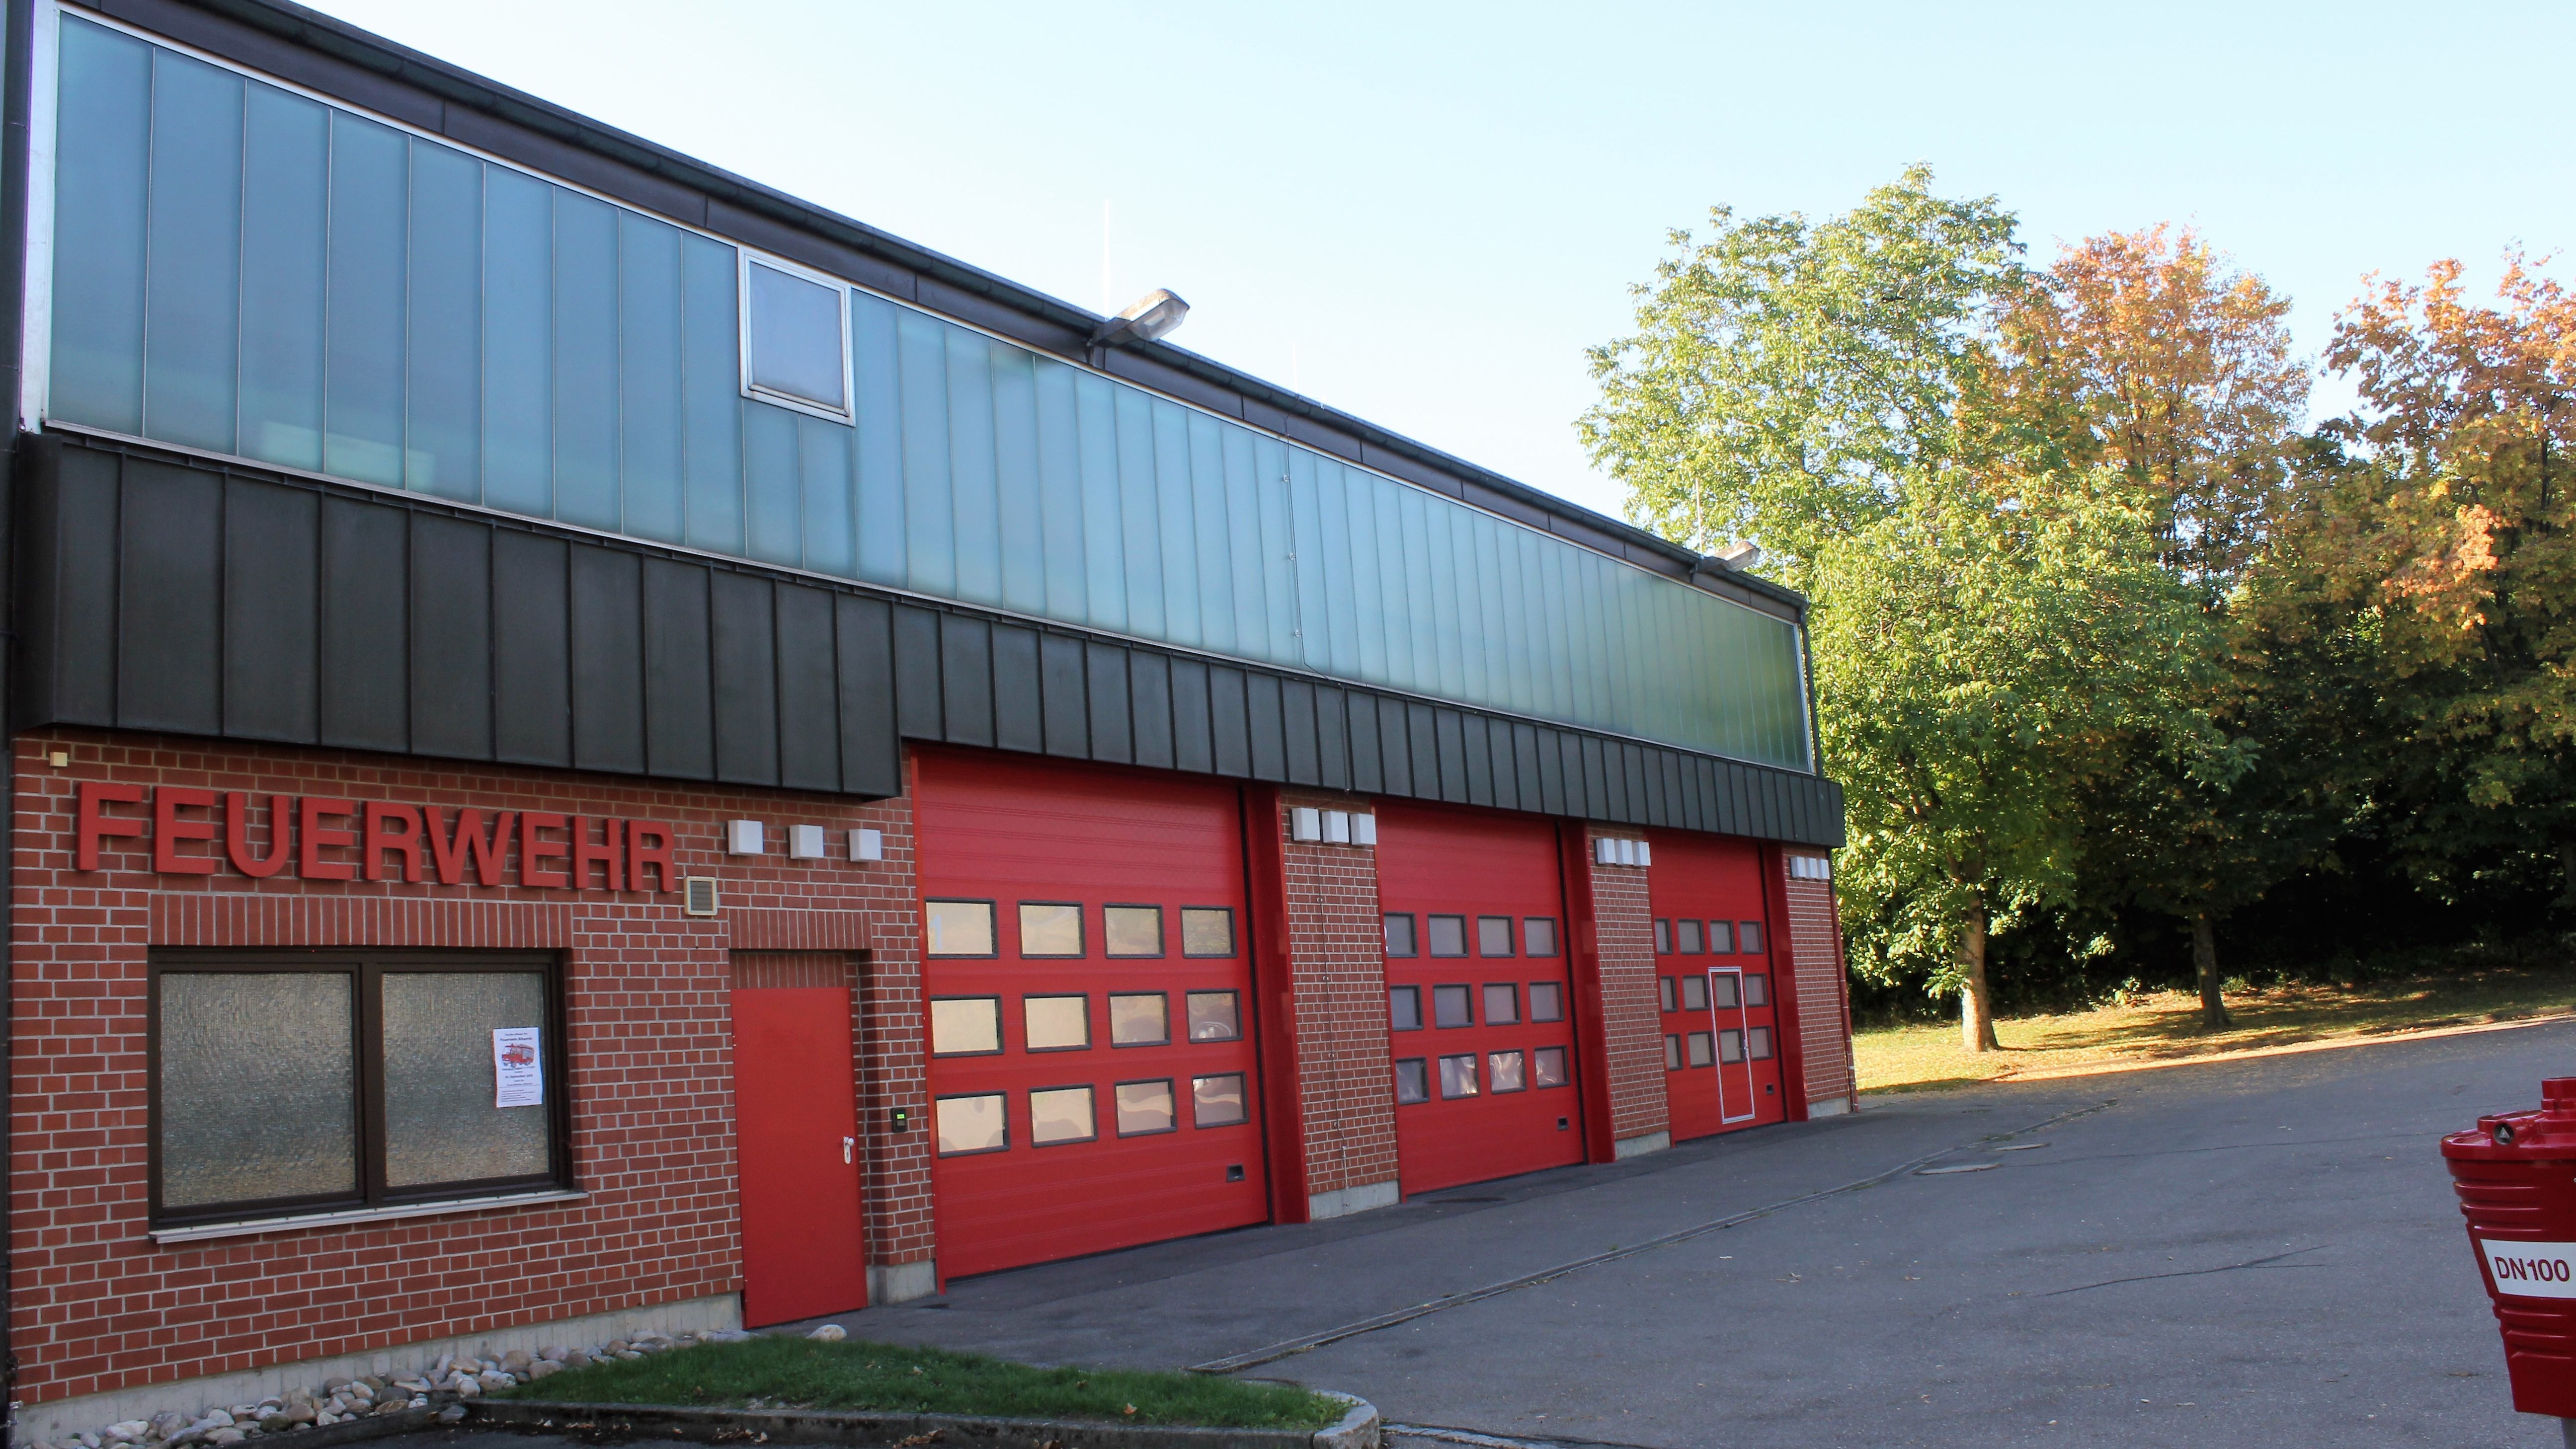 
    
        
                
                        Feuerwehrgerätehaus
                    
            
    
